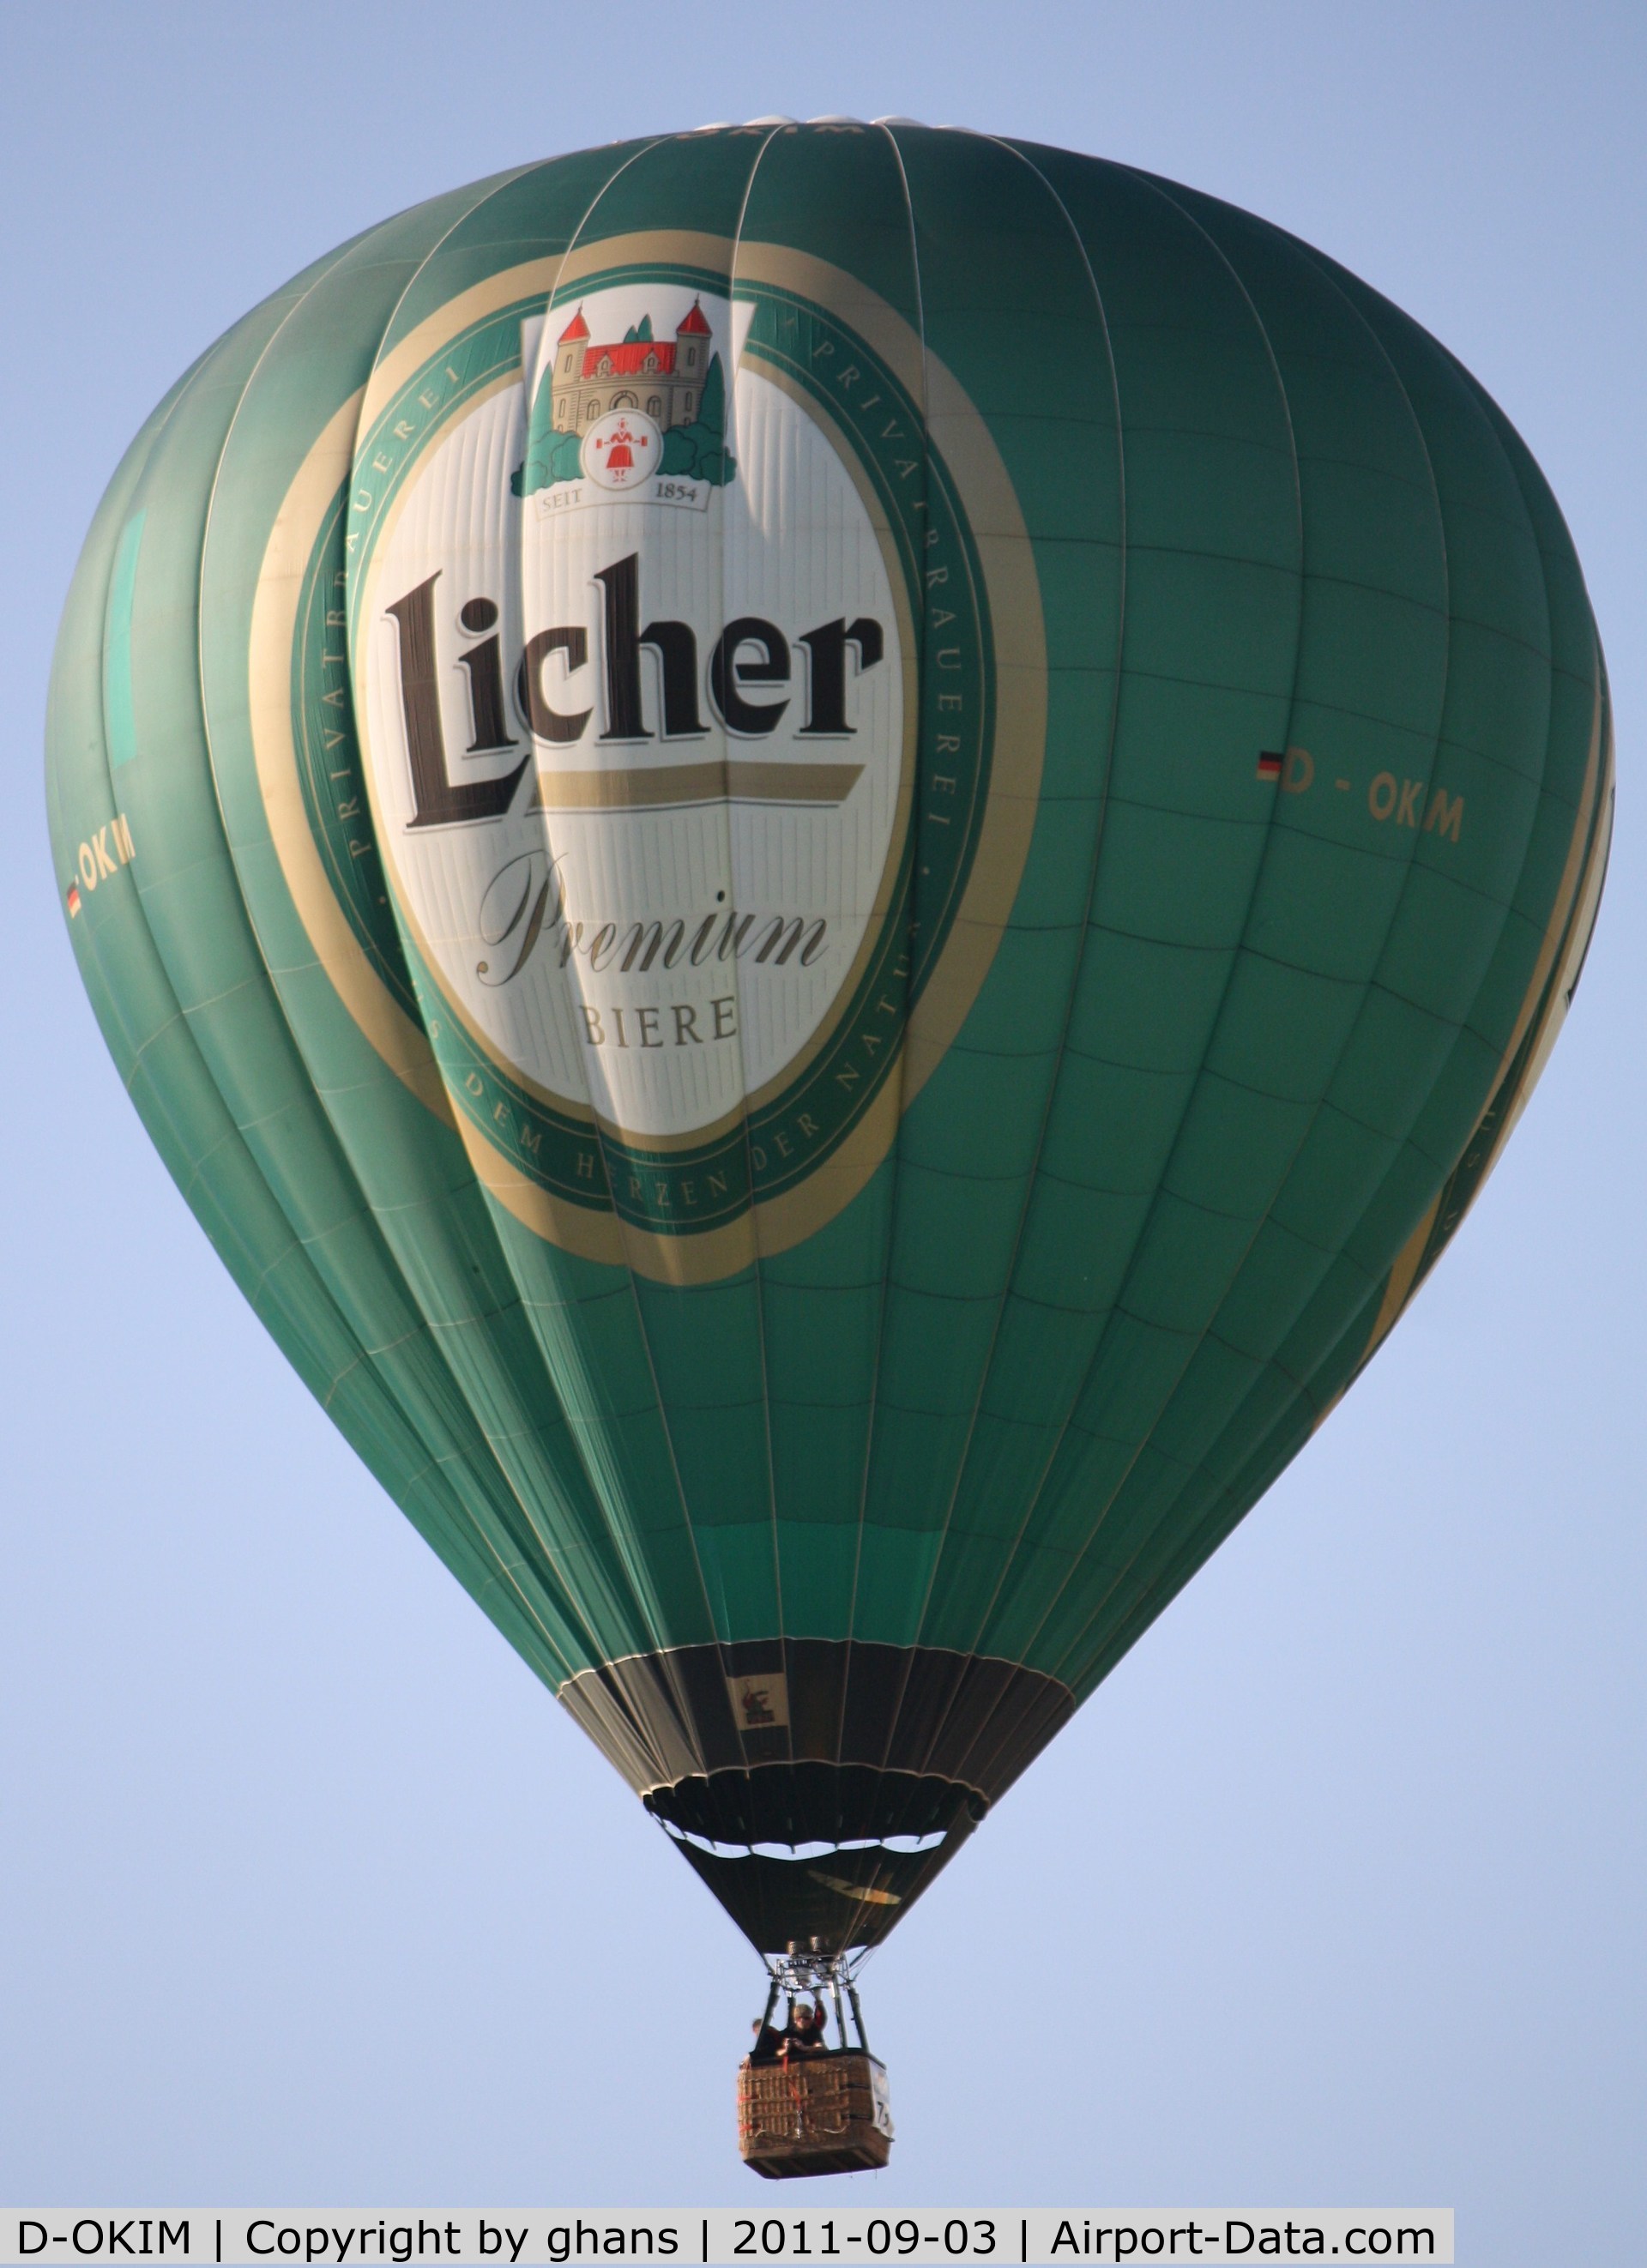 D-OKIM, 2001 Schroeder Fire Balloons G30/24 C/N 944, WIM 2011
'Licher Premium Biere'